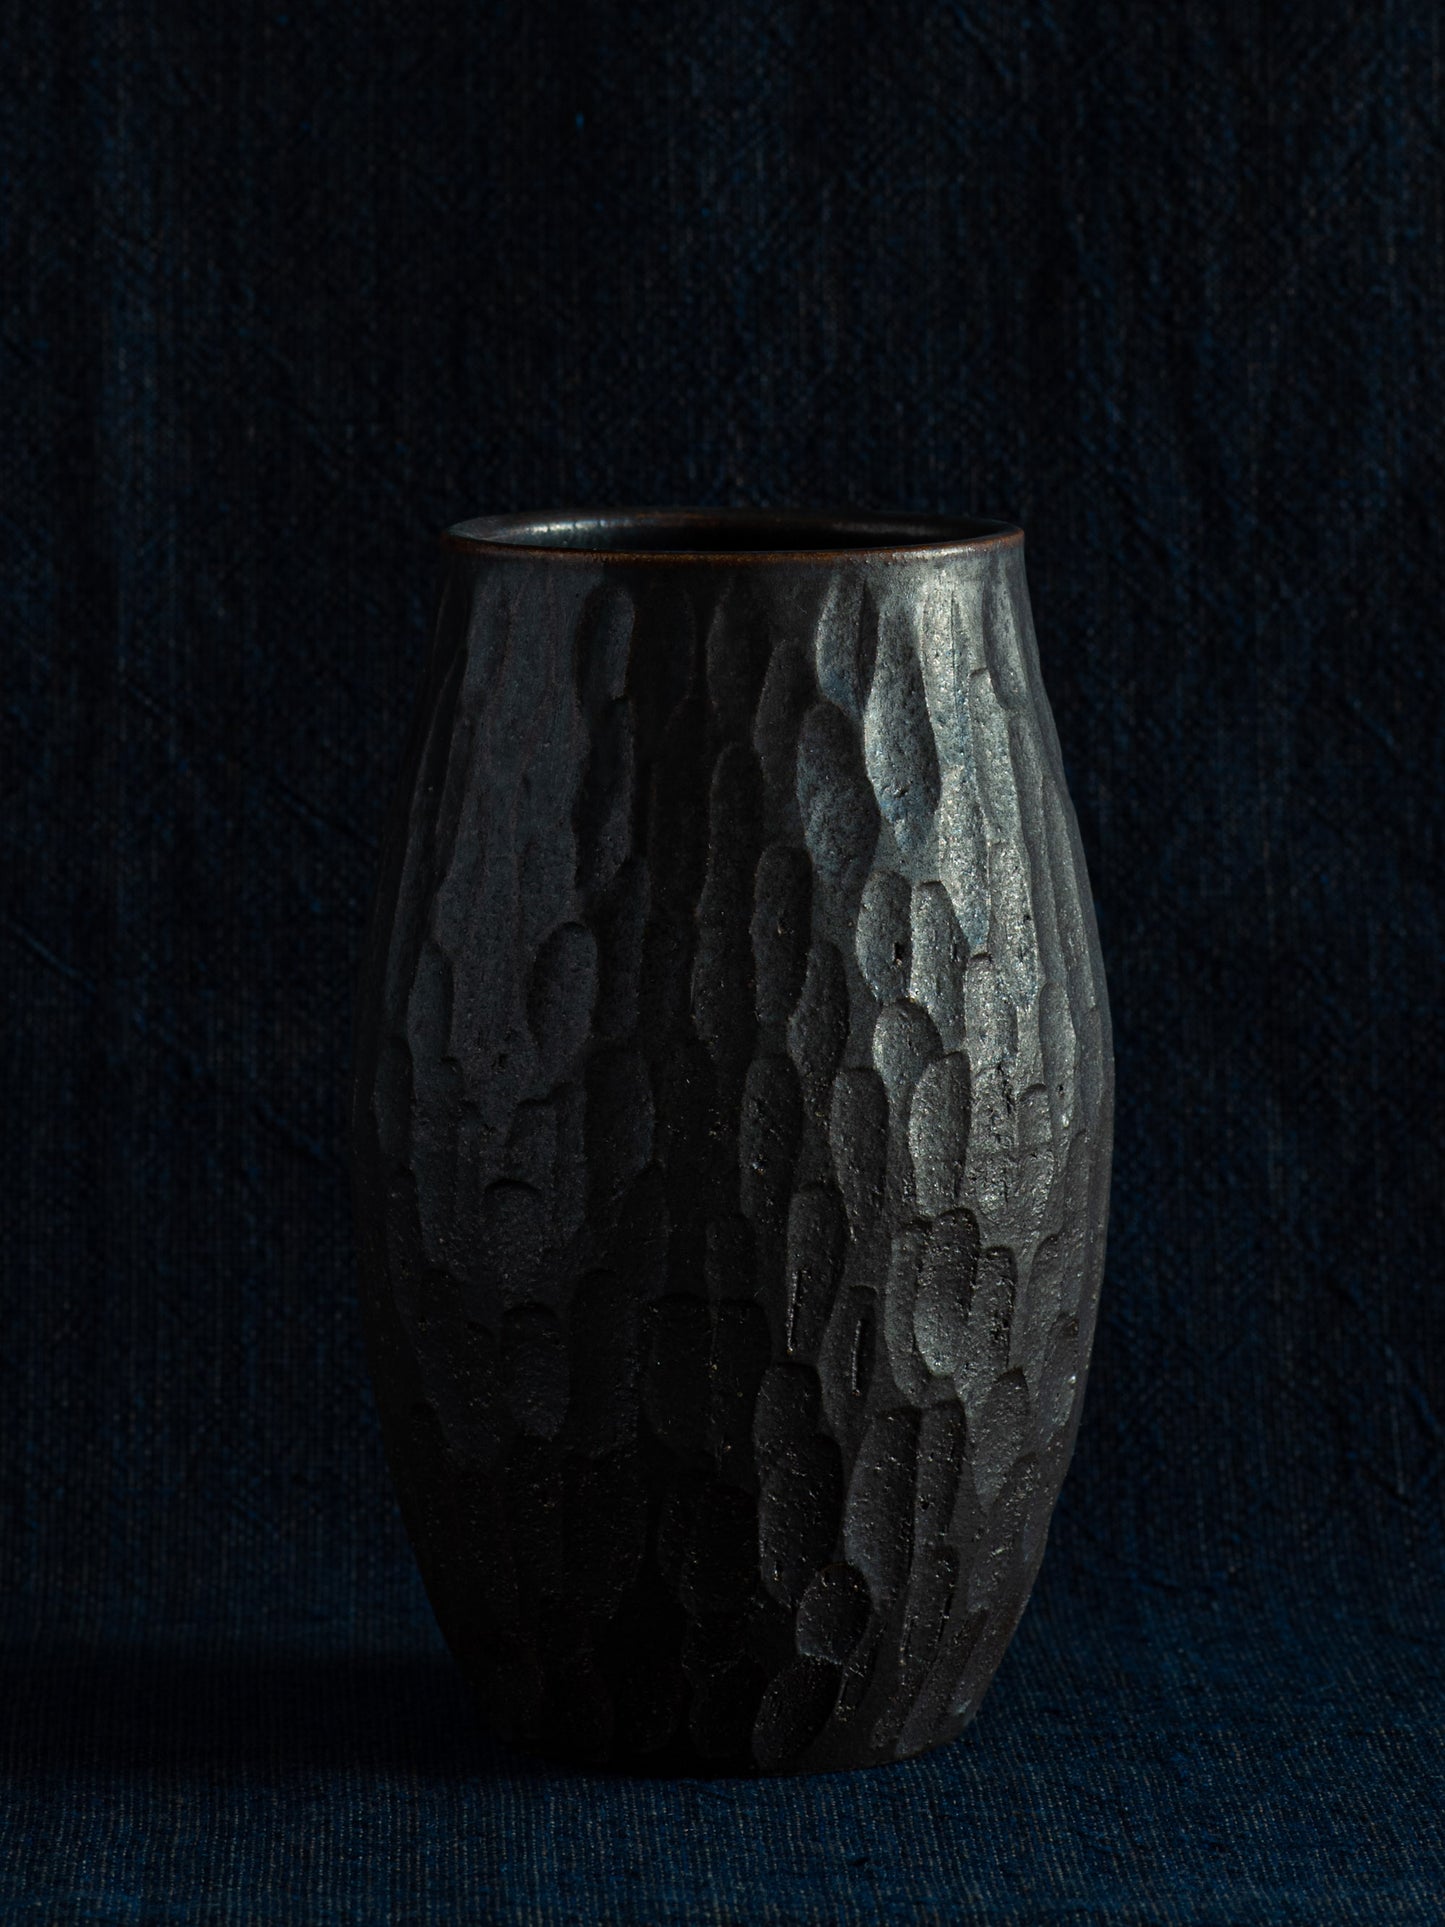 Carved Flower Vase